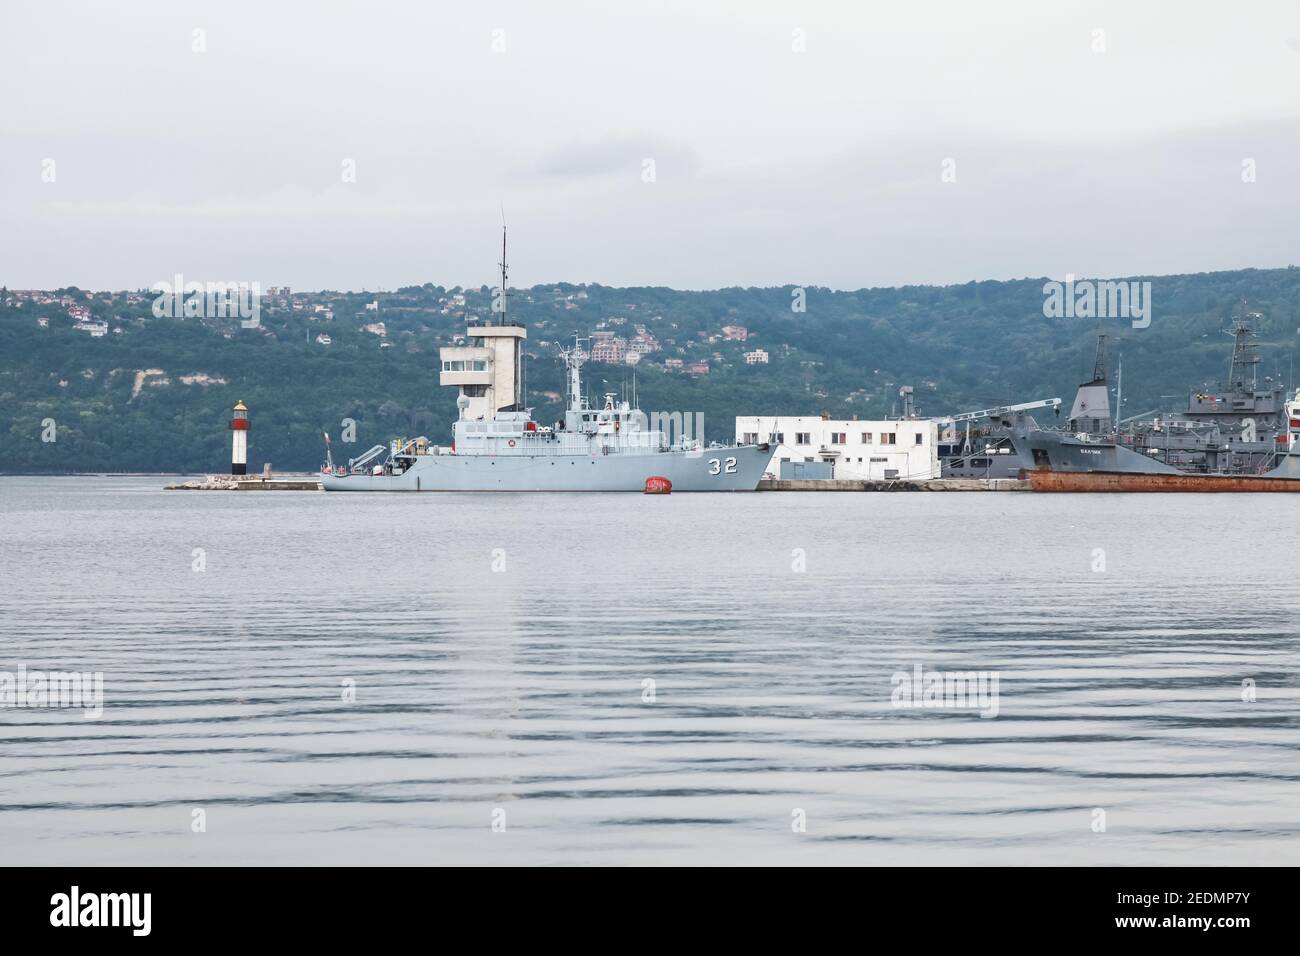 Varna, Bulgarien - 16. Juli 2014: Dreigliedriger Minenjäger Nummer 32 der bulgarischen Marine steht auf dem Marinestützpunkt Varna Stockfoto